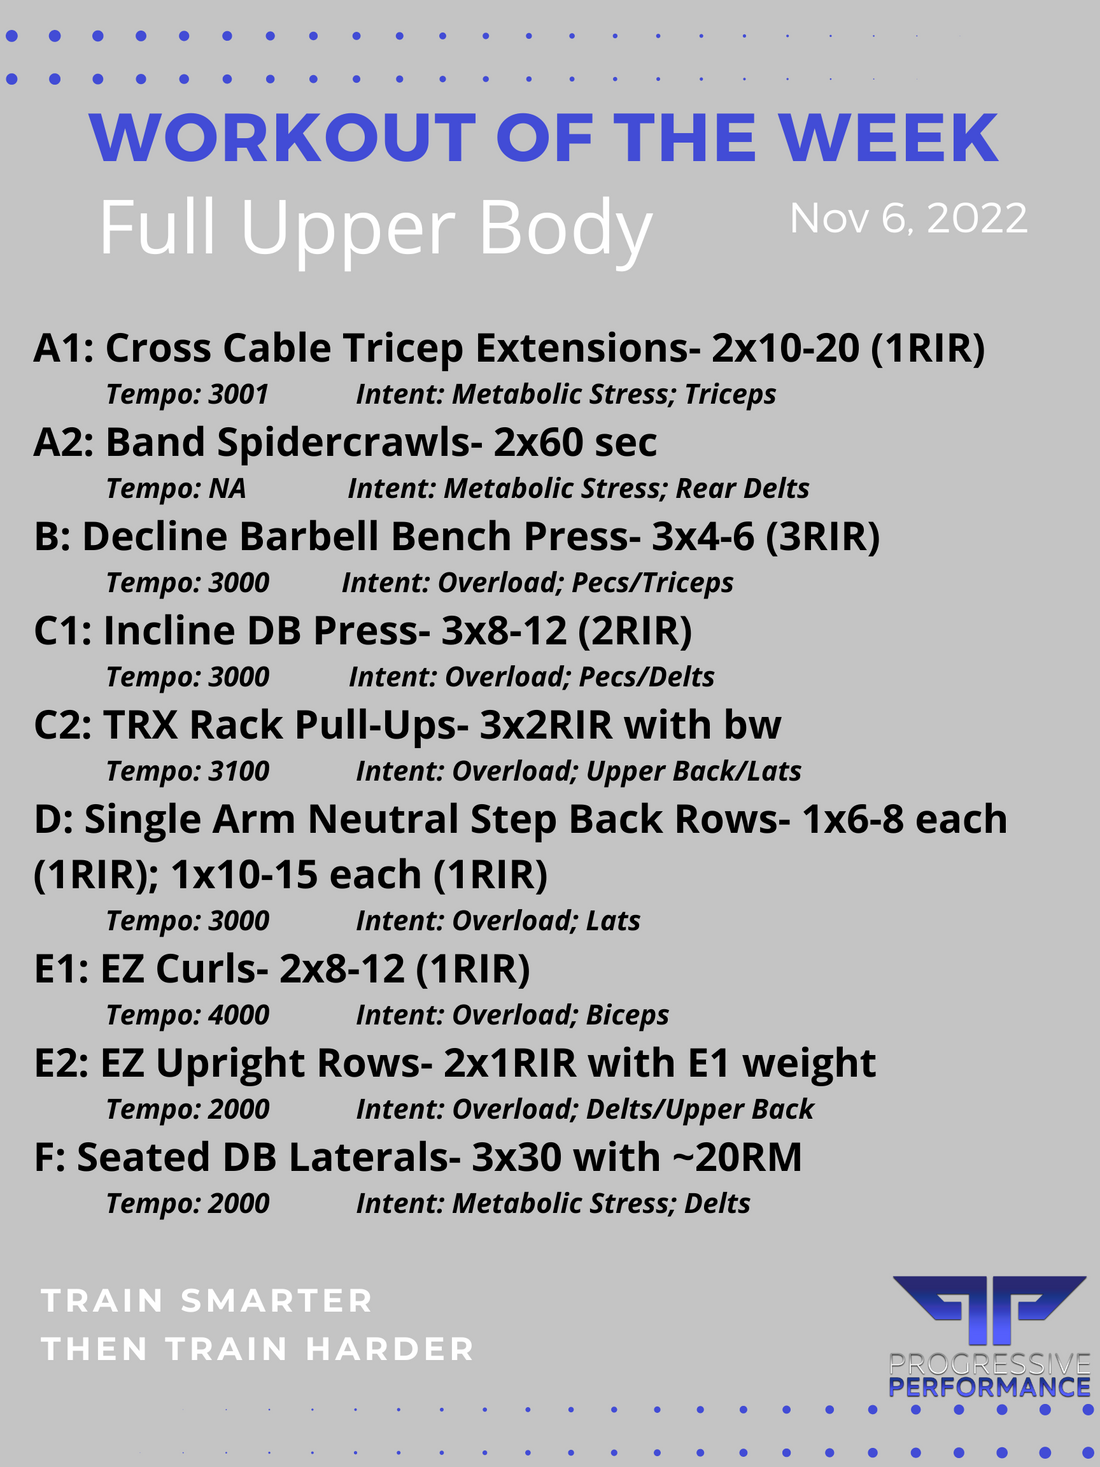 Full Upper Body